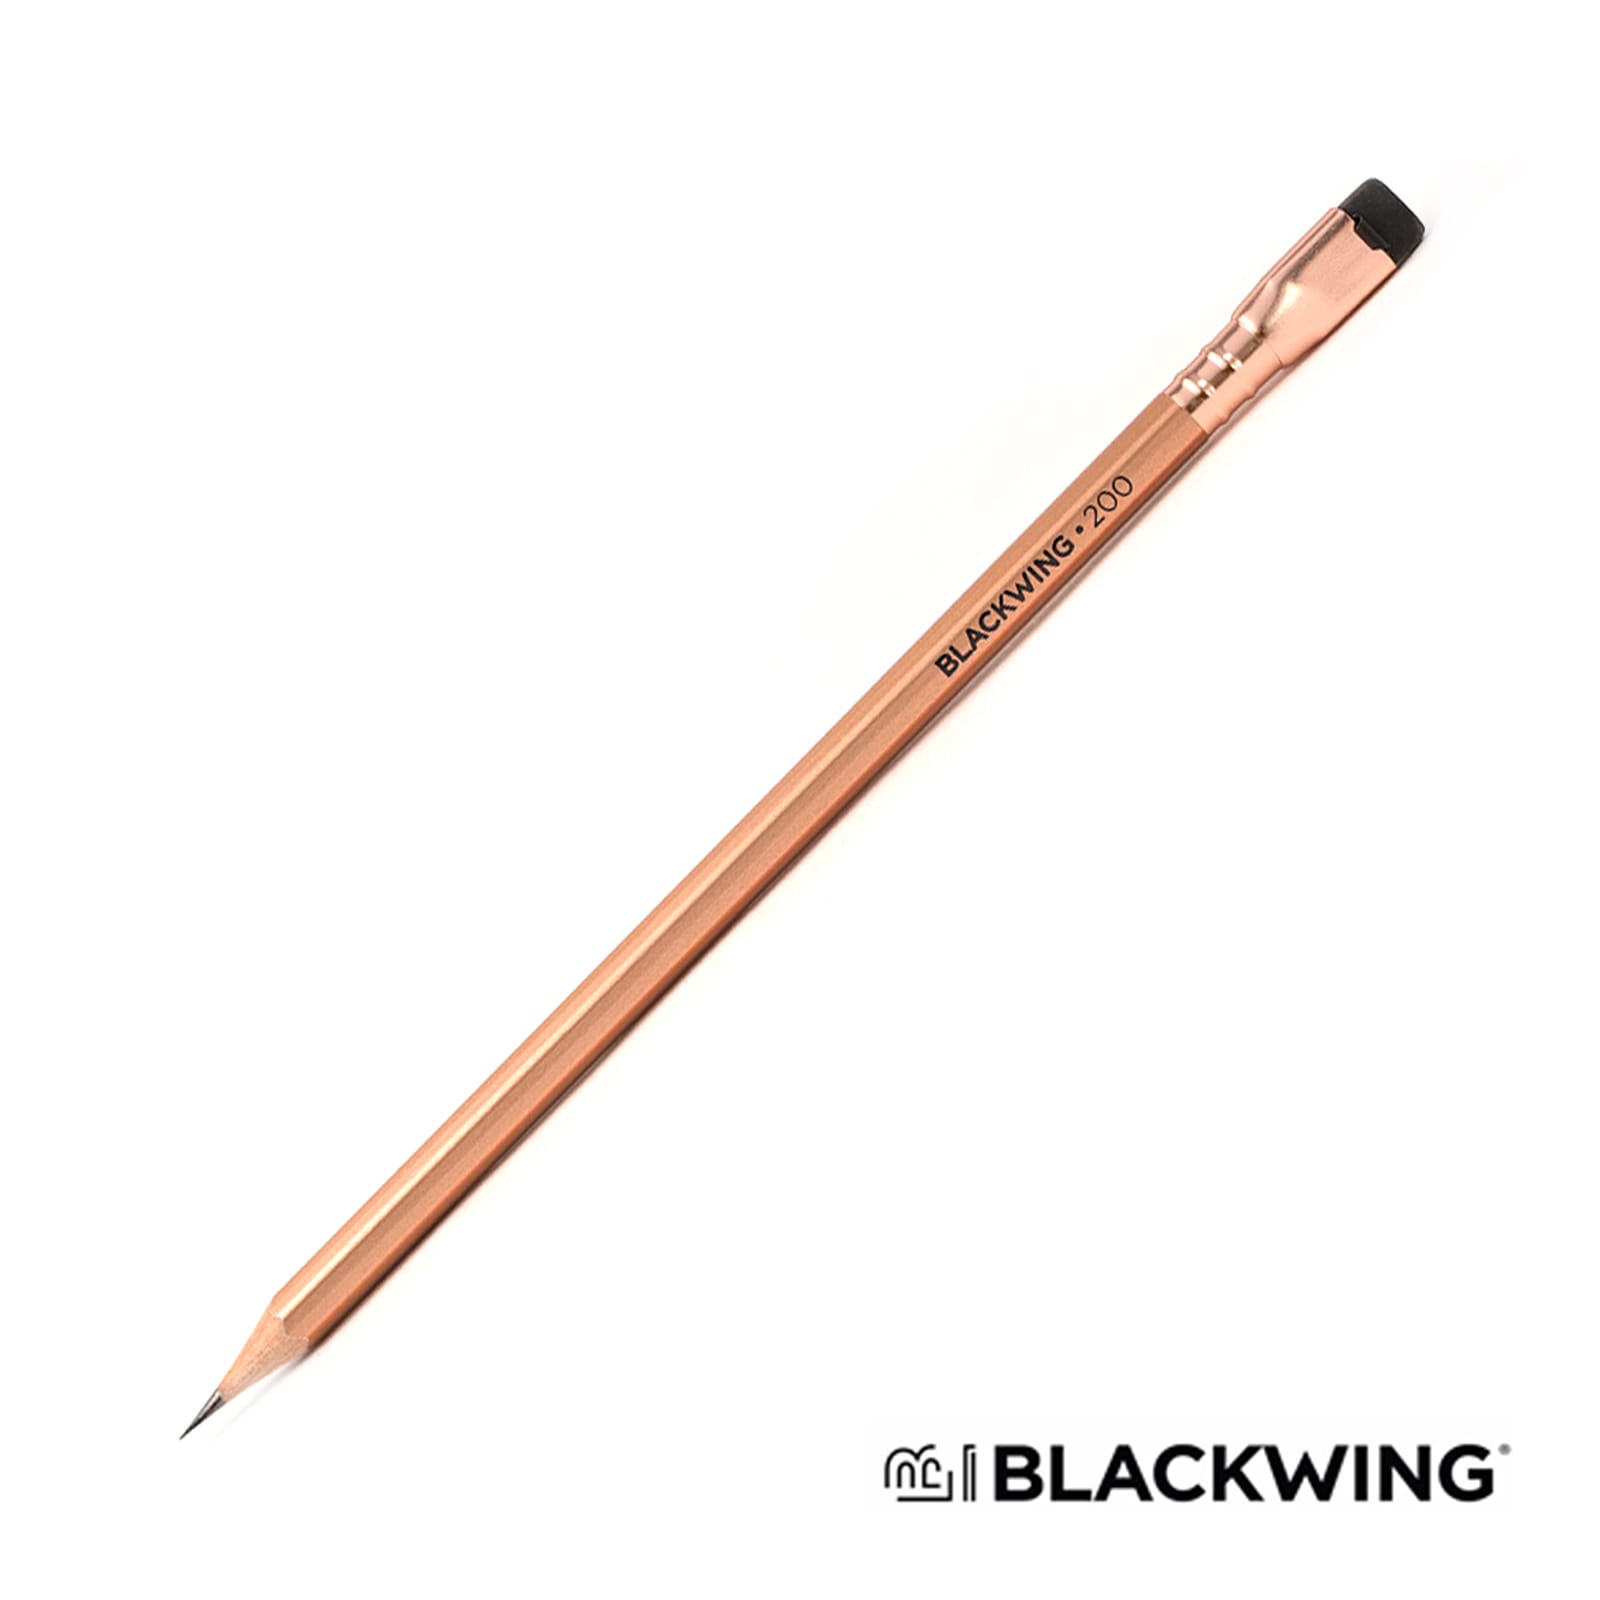 BLACKWING 限定品 鉛筆 ブラックウィング VOL.200 106785